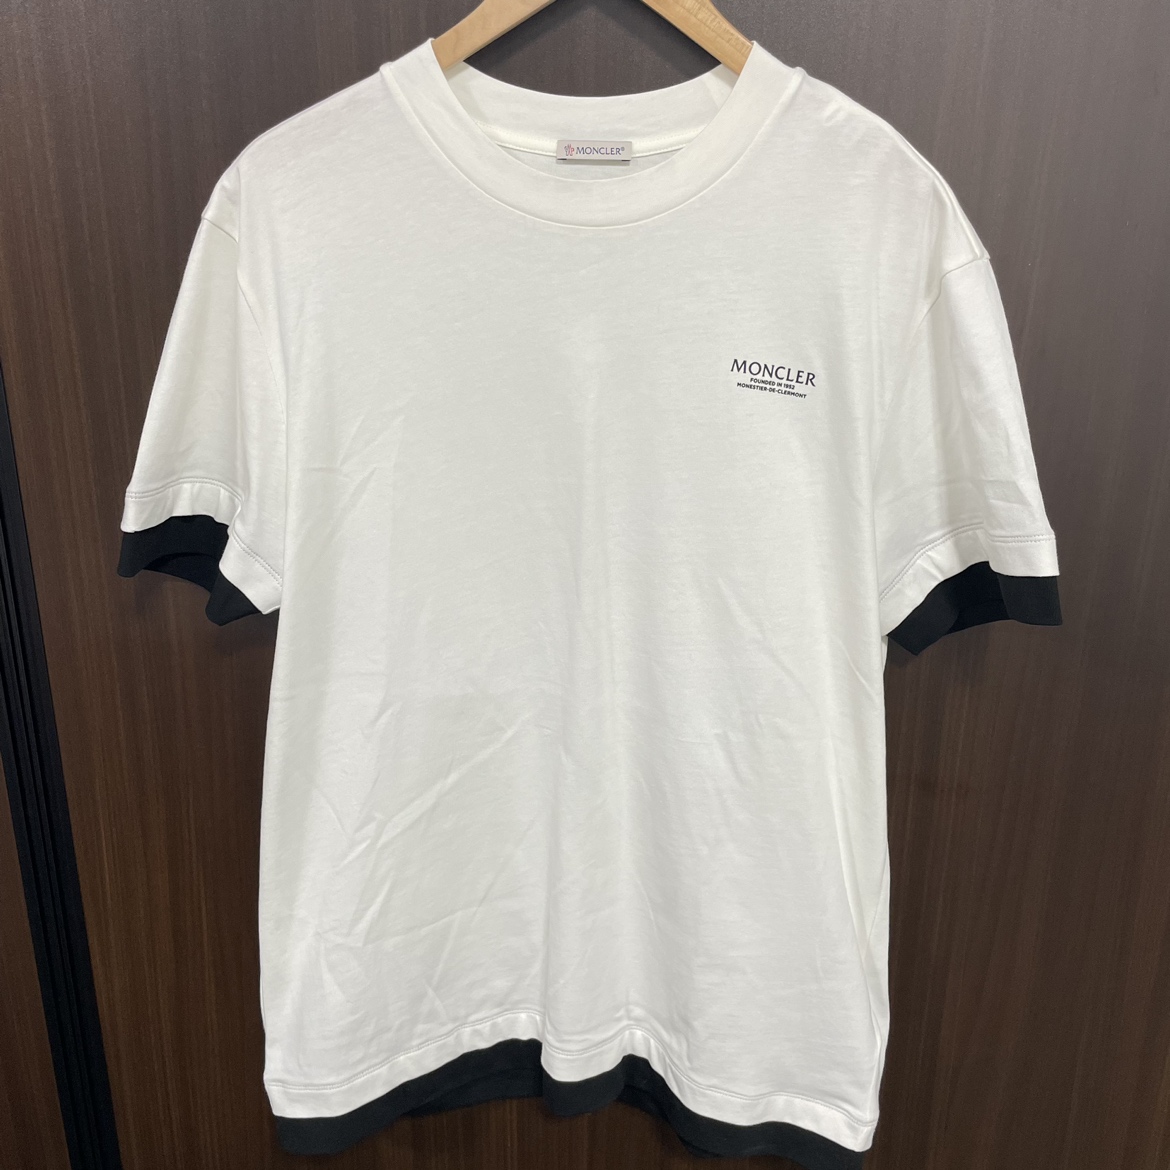 モンクレールの2021SS H10918C00017 ロゴプリント Tシャツの買取実績です。